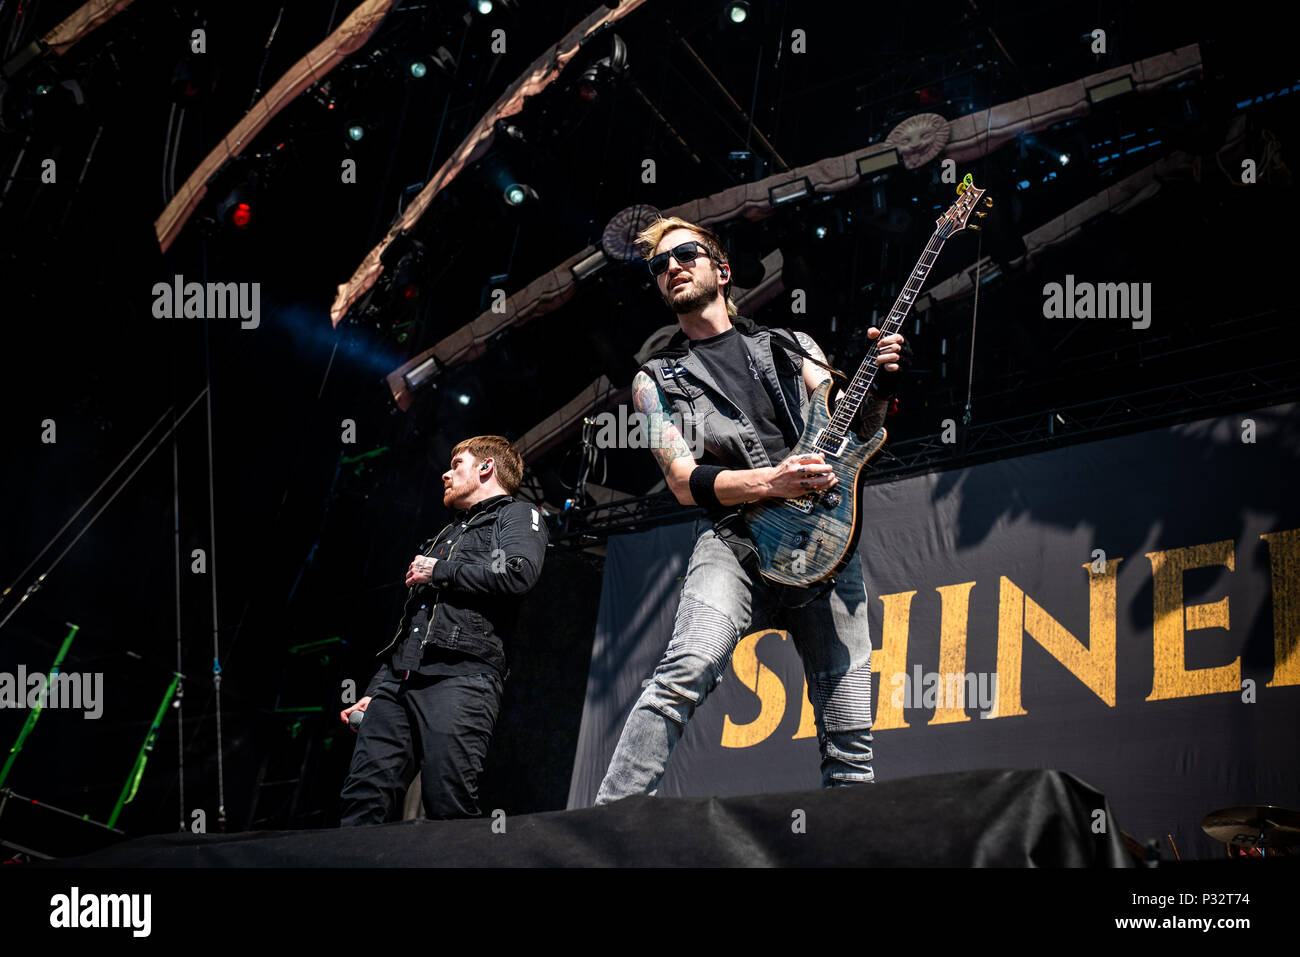 Florenz, Italien. 17 Jun, 2018. Die amerikanische Band Shinedown live auf  der Bühne des Firenze Rocks Festival 2018, Öffnung für Iron Maiden. Foto:  Alessandro Bosio/Alamy leben Nachrichten Stockfotografie - Alamy